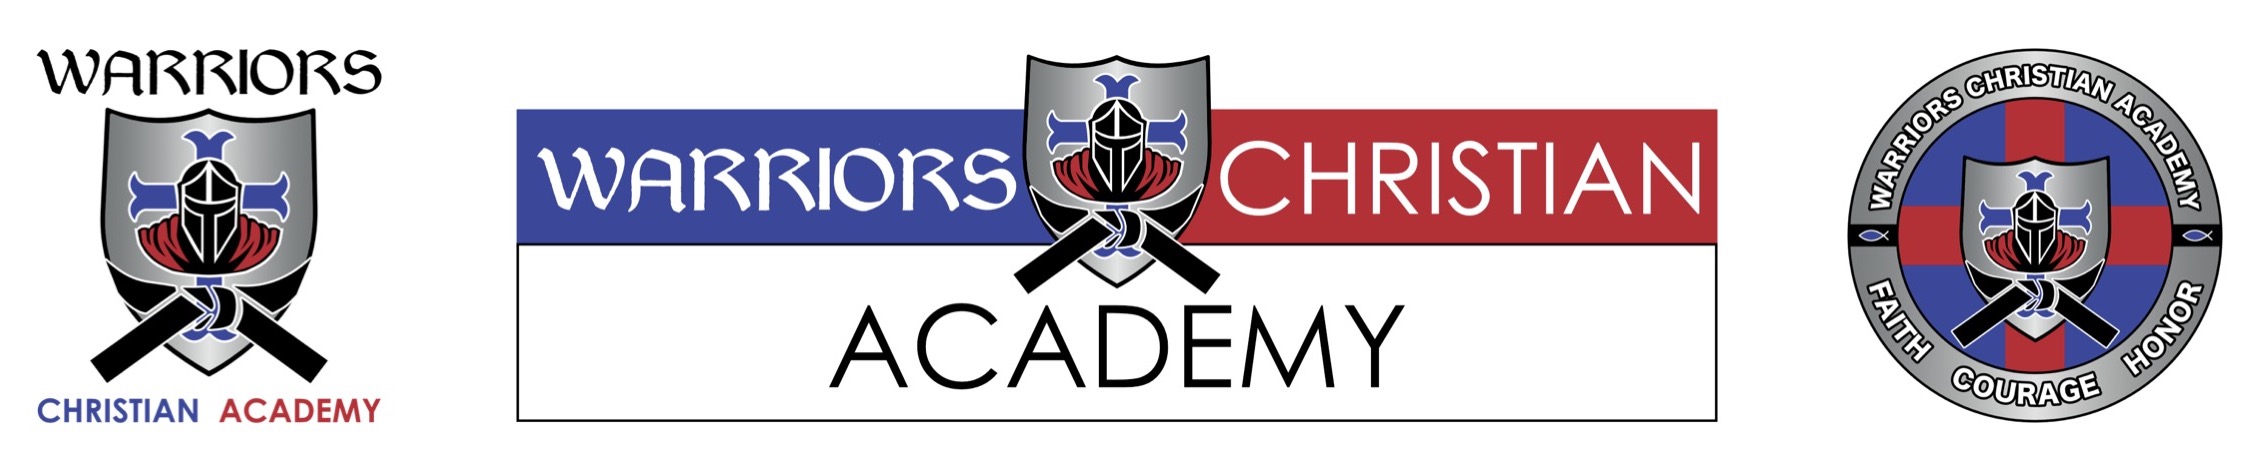 Warriors Christian Academy banner logo